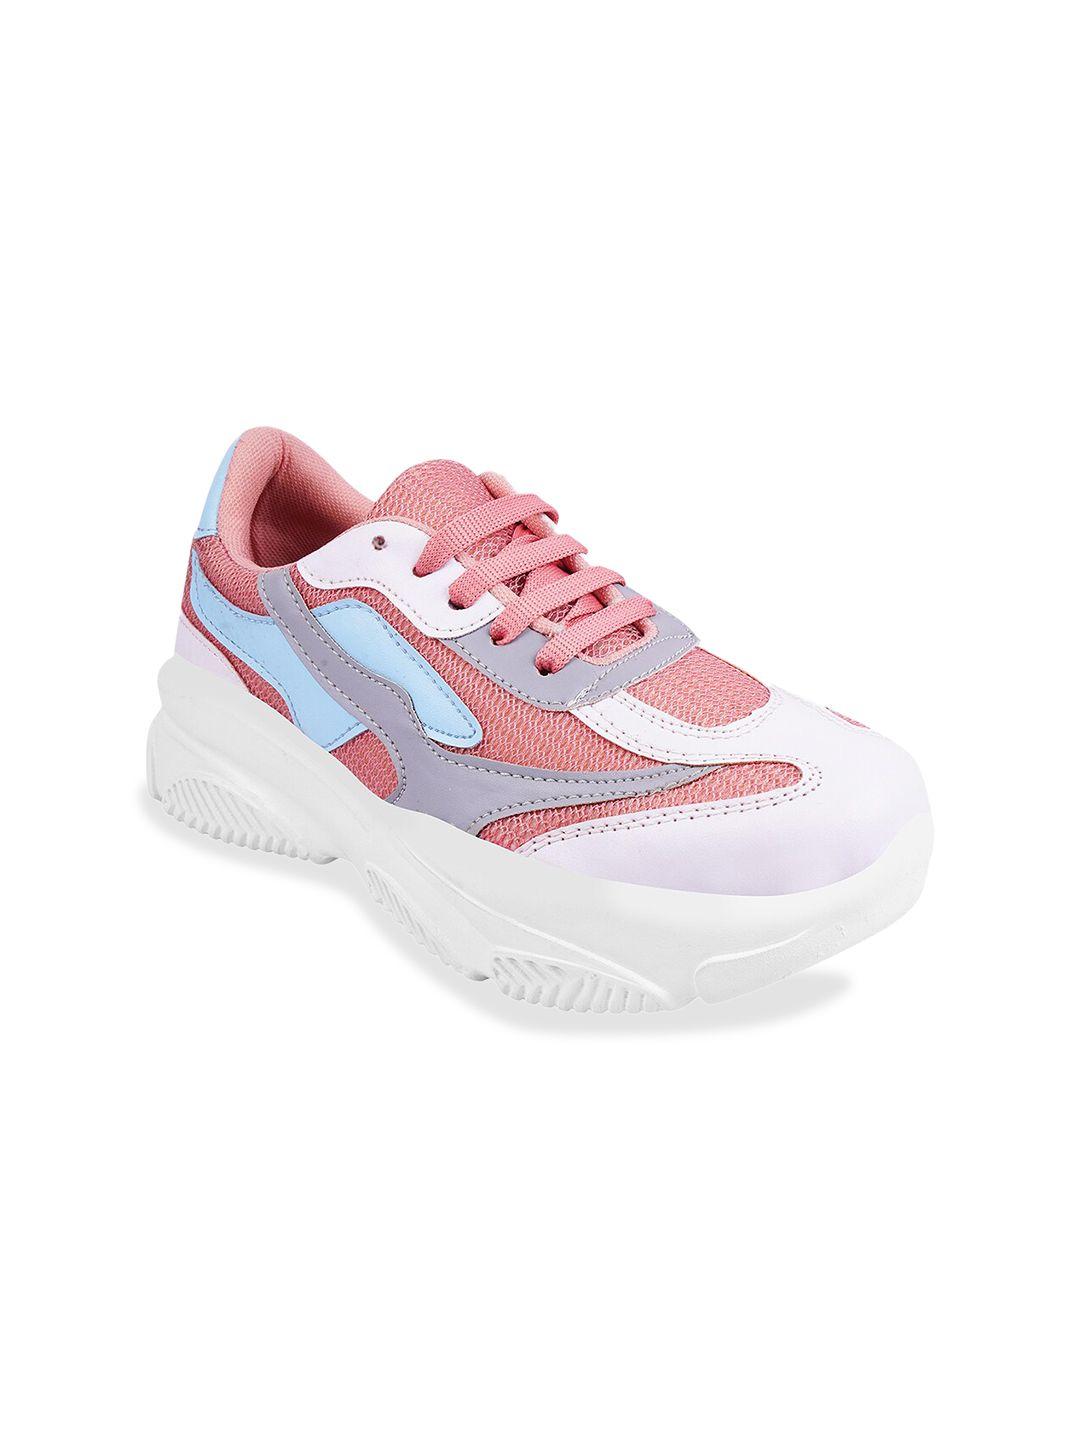 shoetopia-women-peach-coloured-mesh-walking-non-marking-shoes